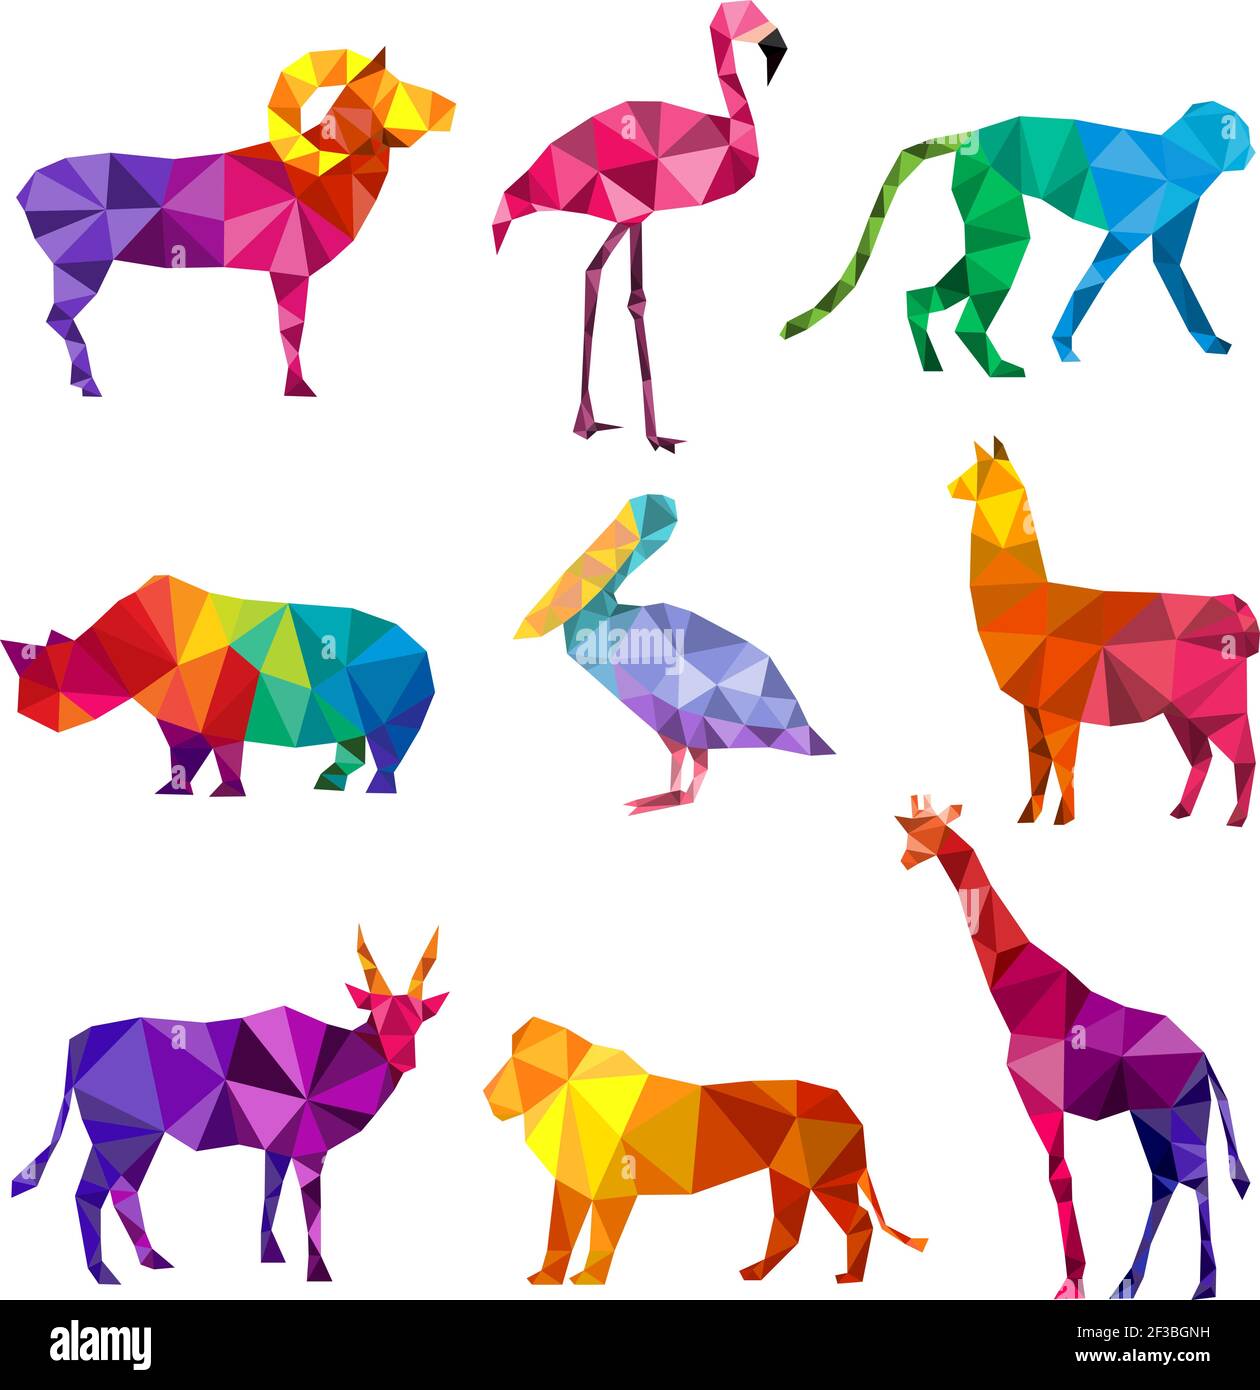 Animaux polygonaux. Bas poly zoo silhouettes d'animaux formes géométriques triangulaires motifs vecteur collection origami Illustration de Vecteur